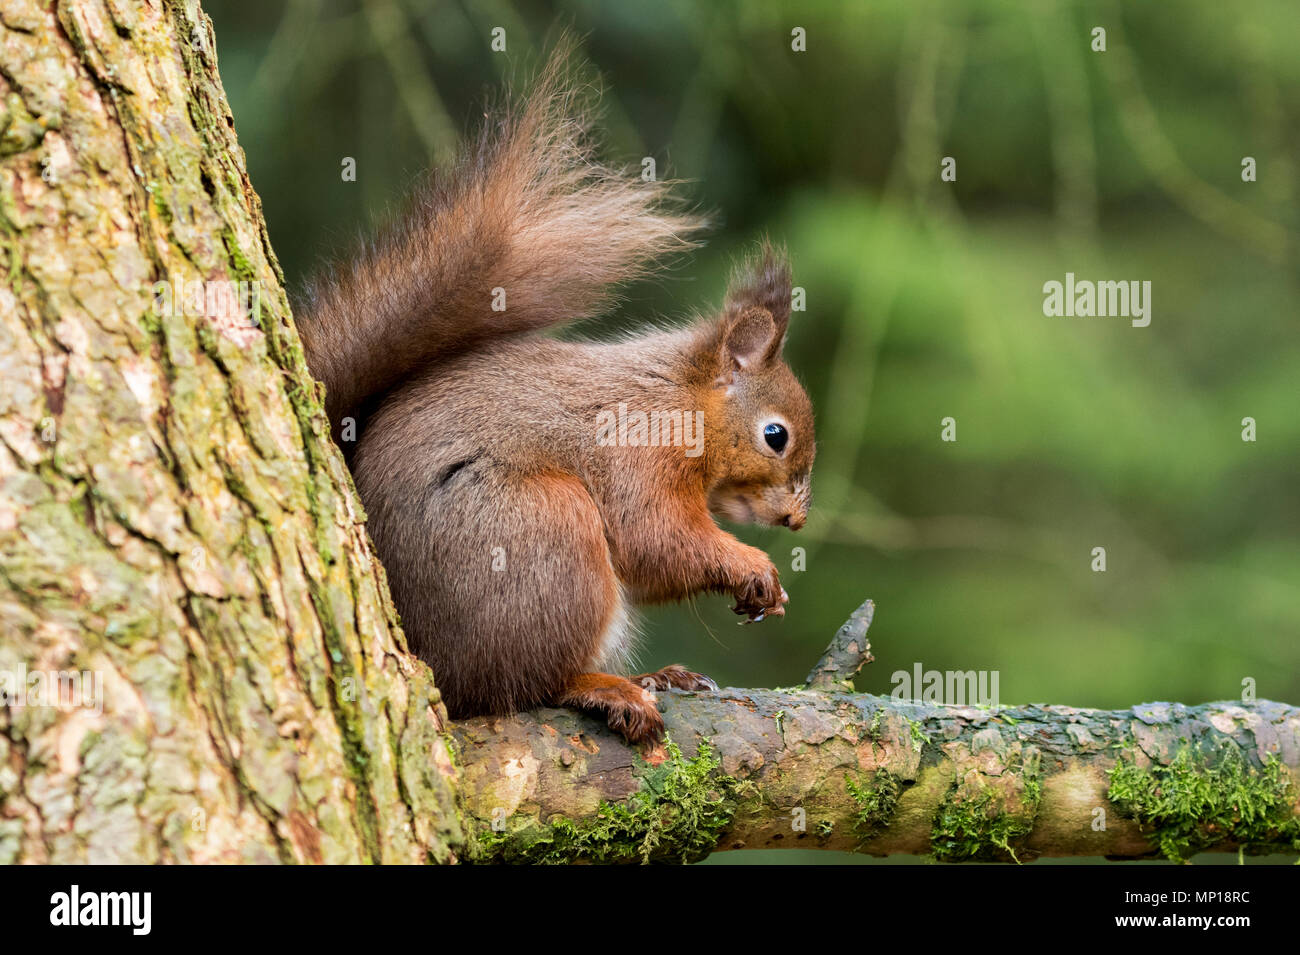 Single, écureuil rouge mignon, assis sur une branche élevée de l'alimentation, la Queue enroulée derrière - Snaizeholme Écureuil rouge, sentier par Hawes, Yorkshire, Angleterre, Royaume-Uni. Banque D'Images